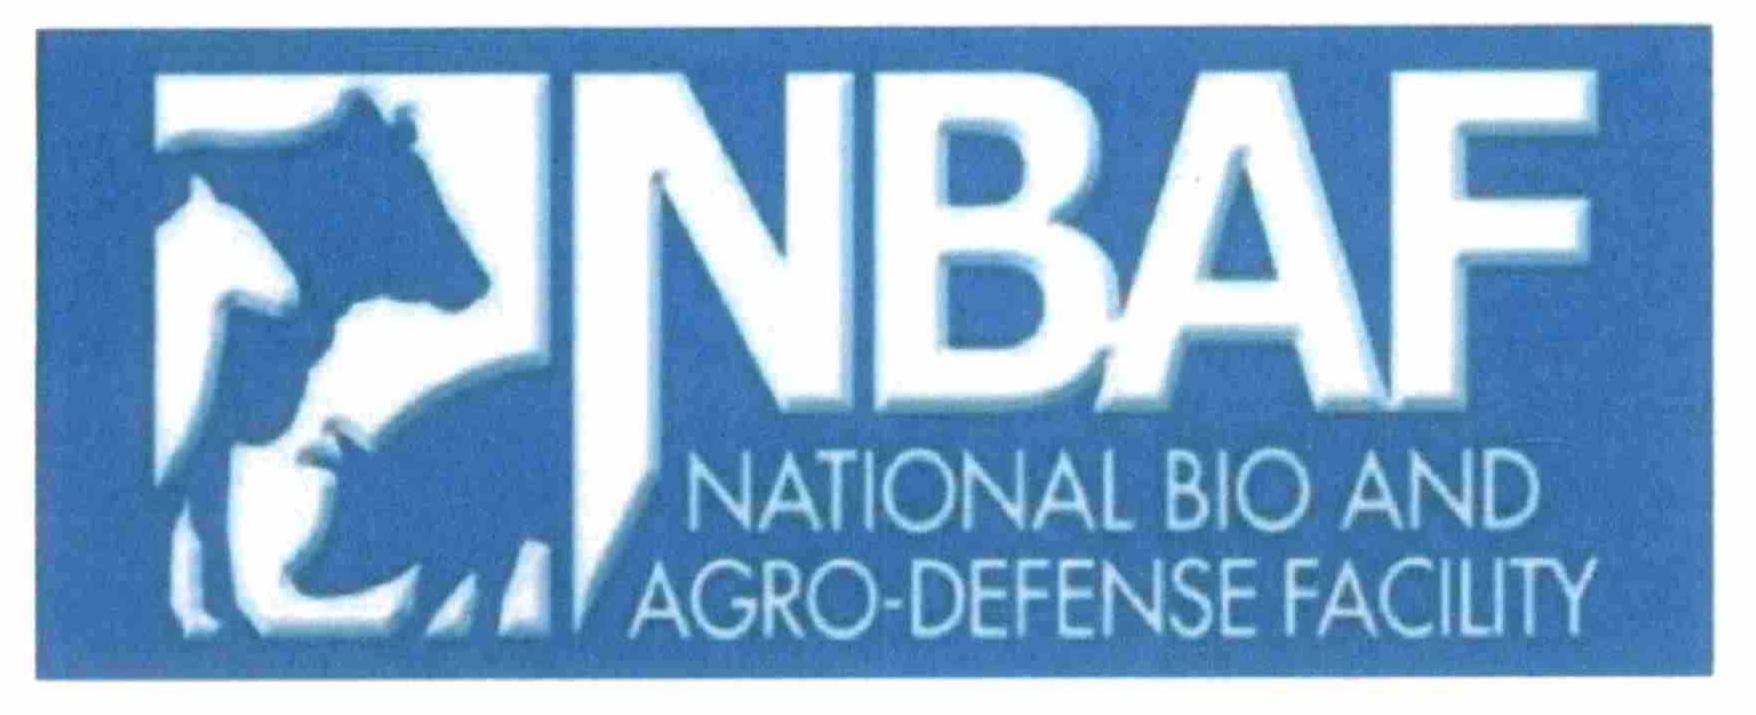  NBAF NATIONAL BIO AND AGRO-DEFENSE FACILITY